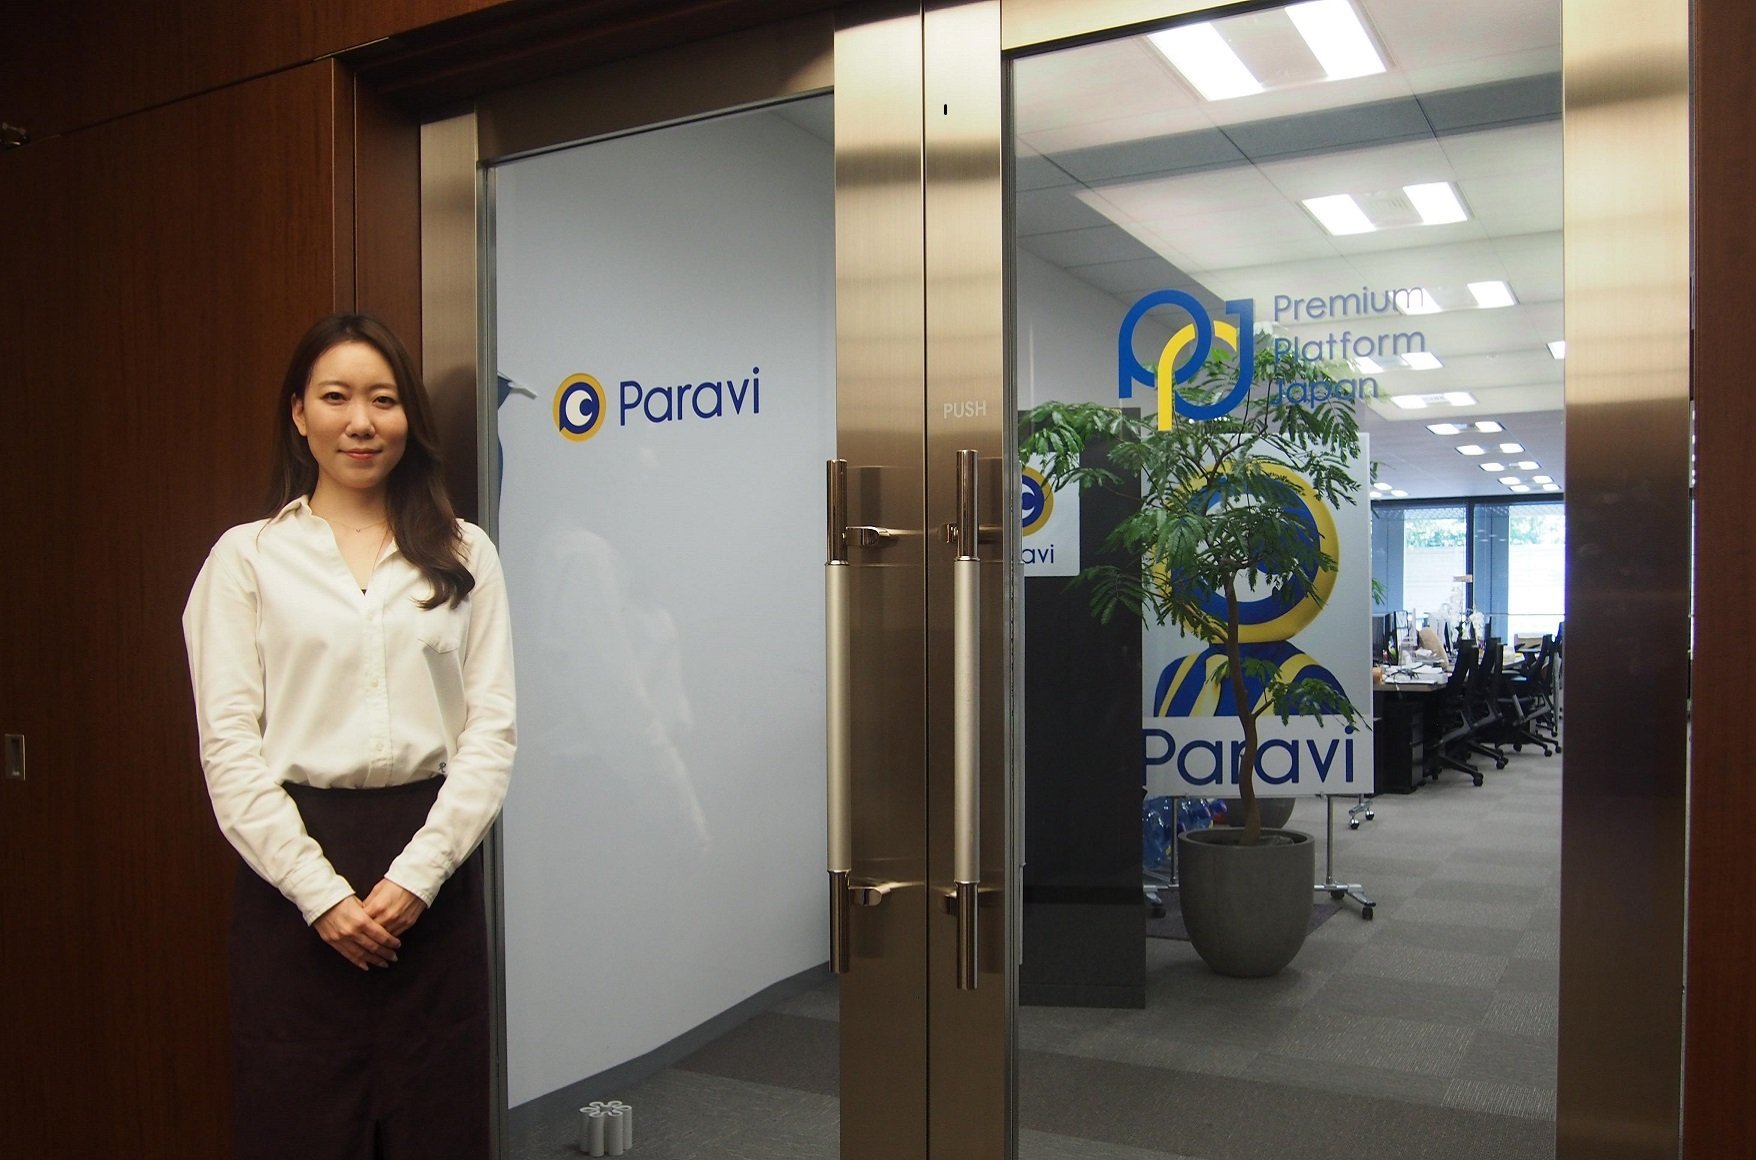 Paravi(Premium Platform Japan, Inc）